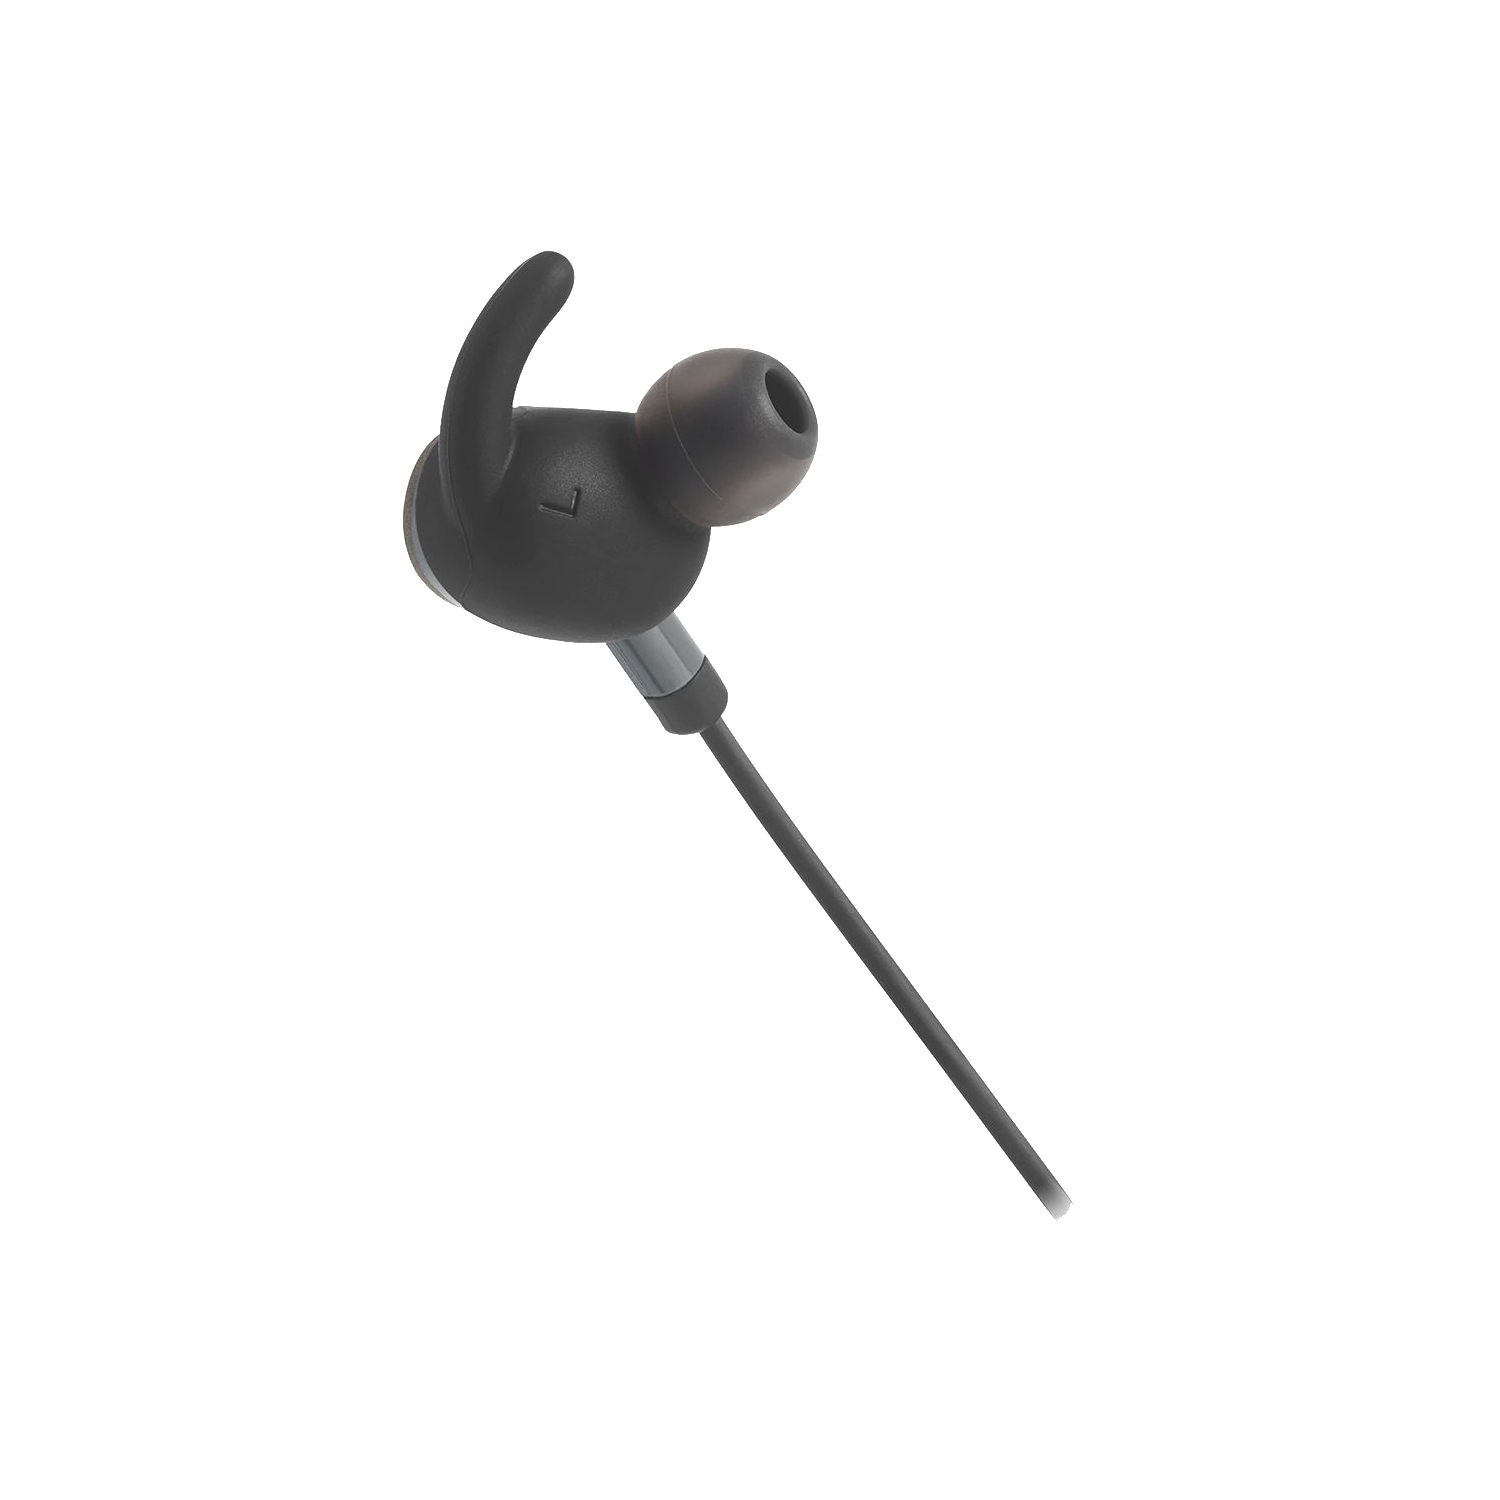 JBL Everest 110GA Wireless In-Ear Headphones